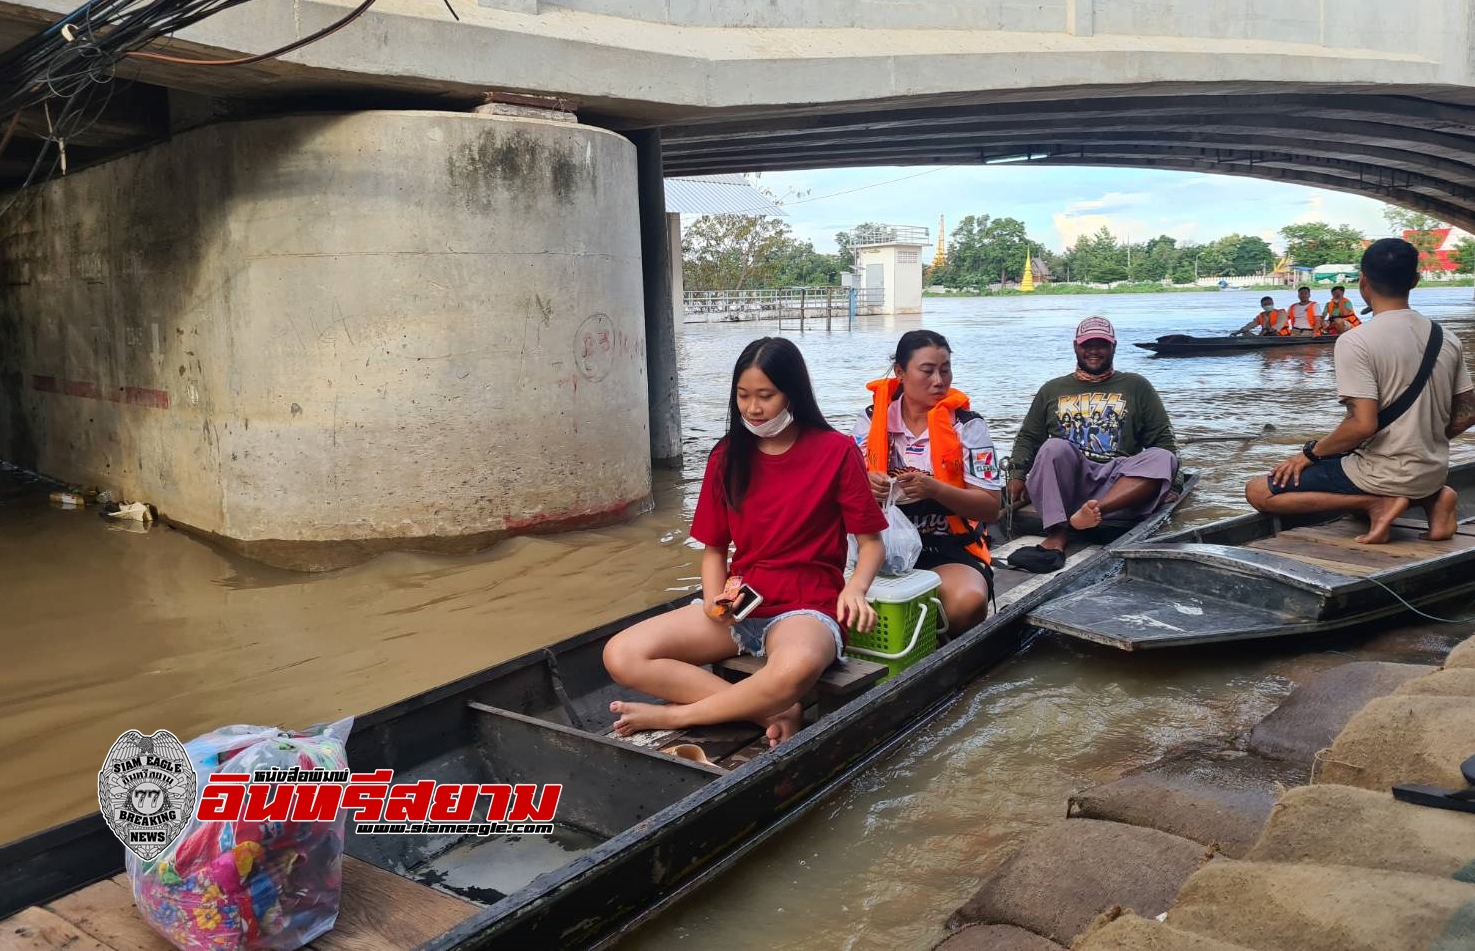 สิงห์บุรี-เทศบาลเมืองฯ บริการเรือรับ-ส่ง ประชาชนผู้ประสบอุทกภัย ฟรี